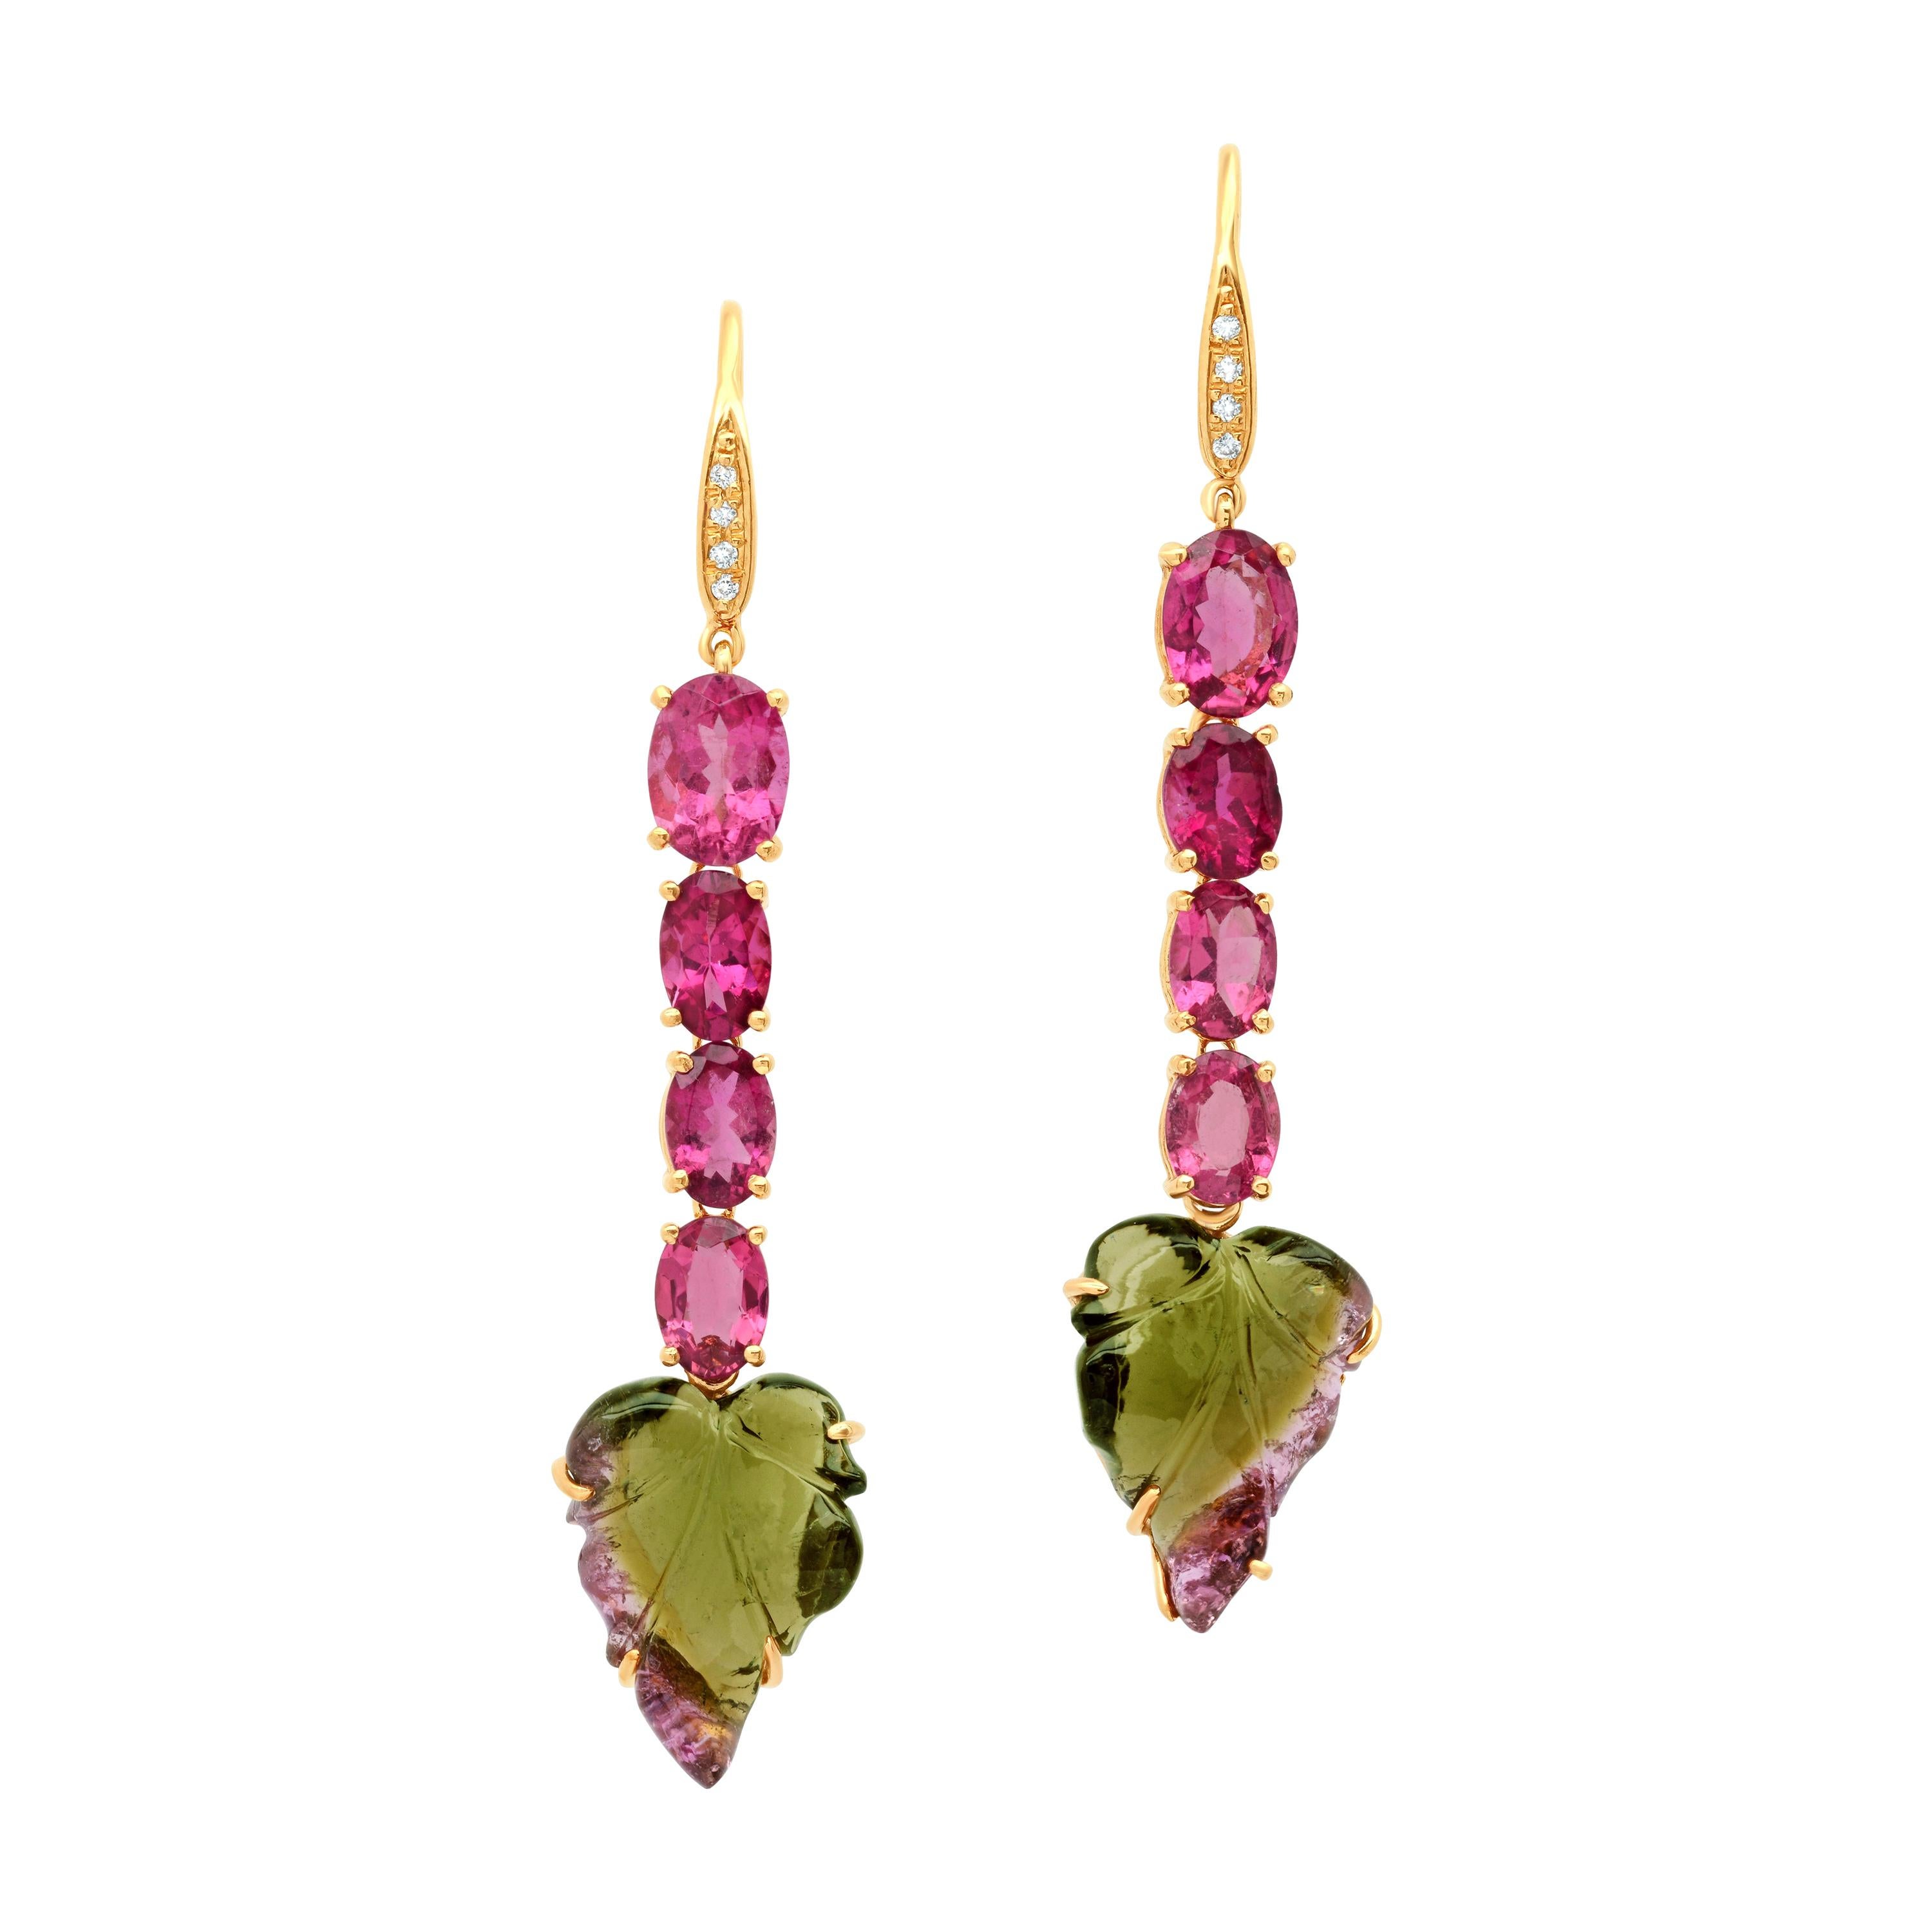 Pendants d'oreilles en or jaune 18 carats avec diamants et tourmaline rose et bicolore